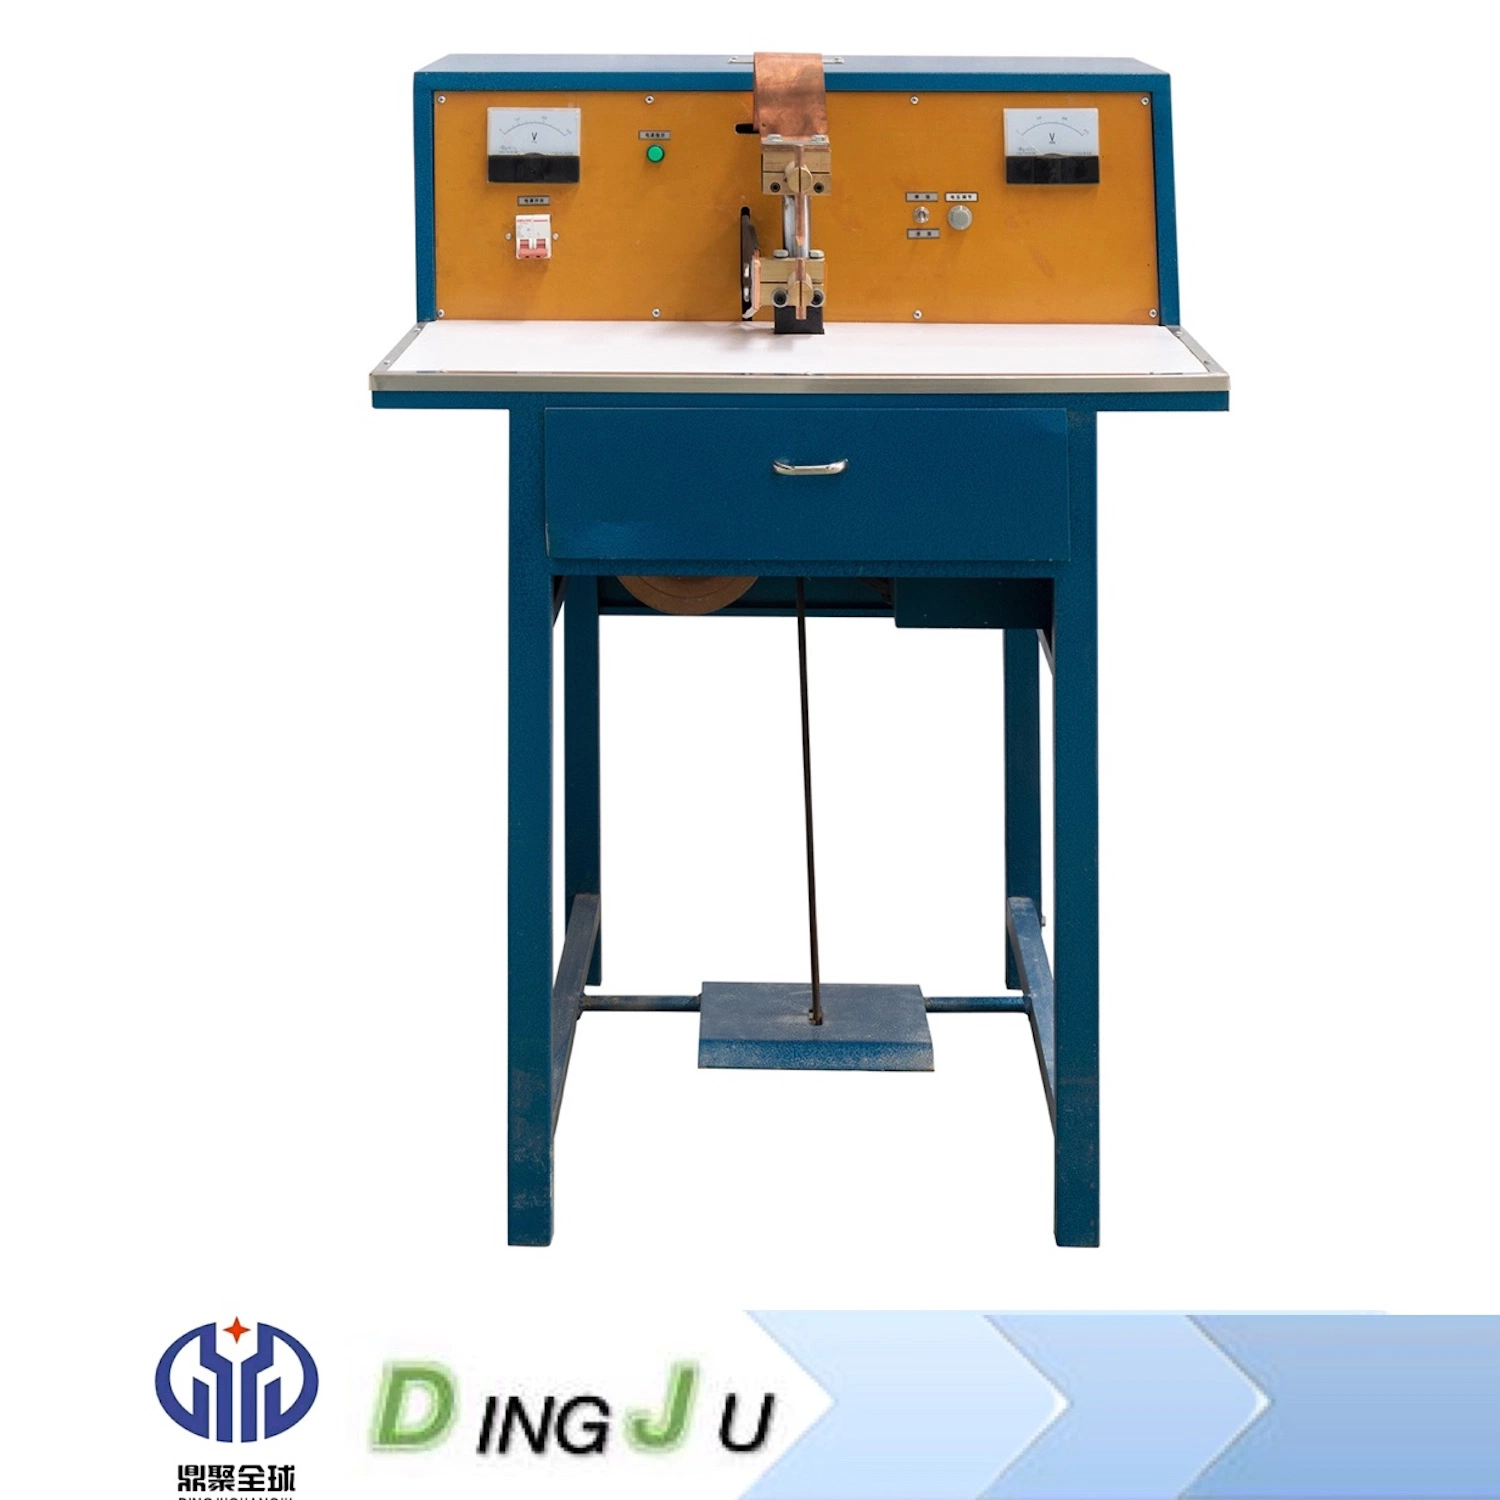 Série Dingju Capacitor de desktop de armazenamento de energia soldadura por resistência da máquina de soldar o equipamento